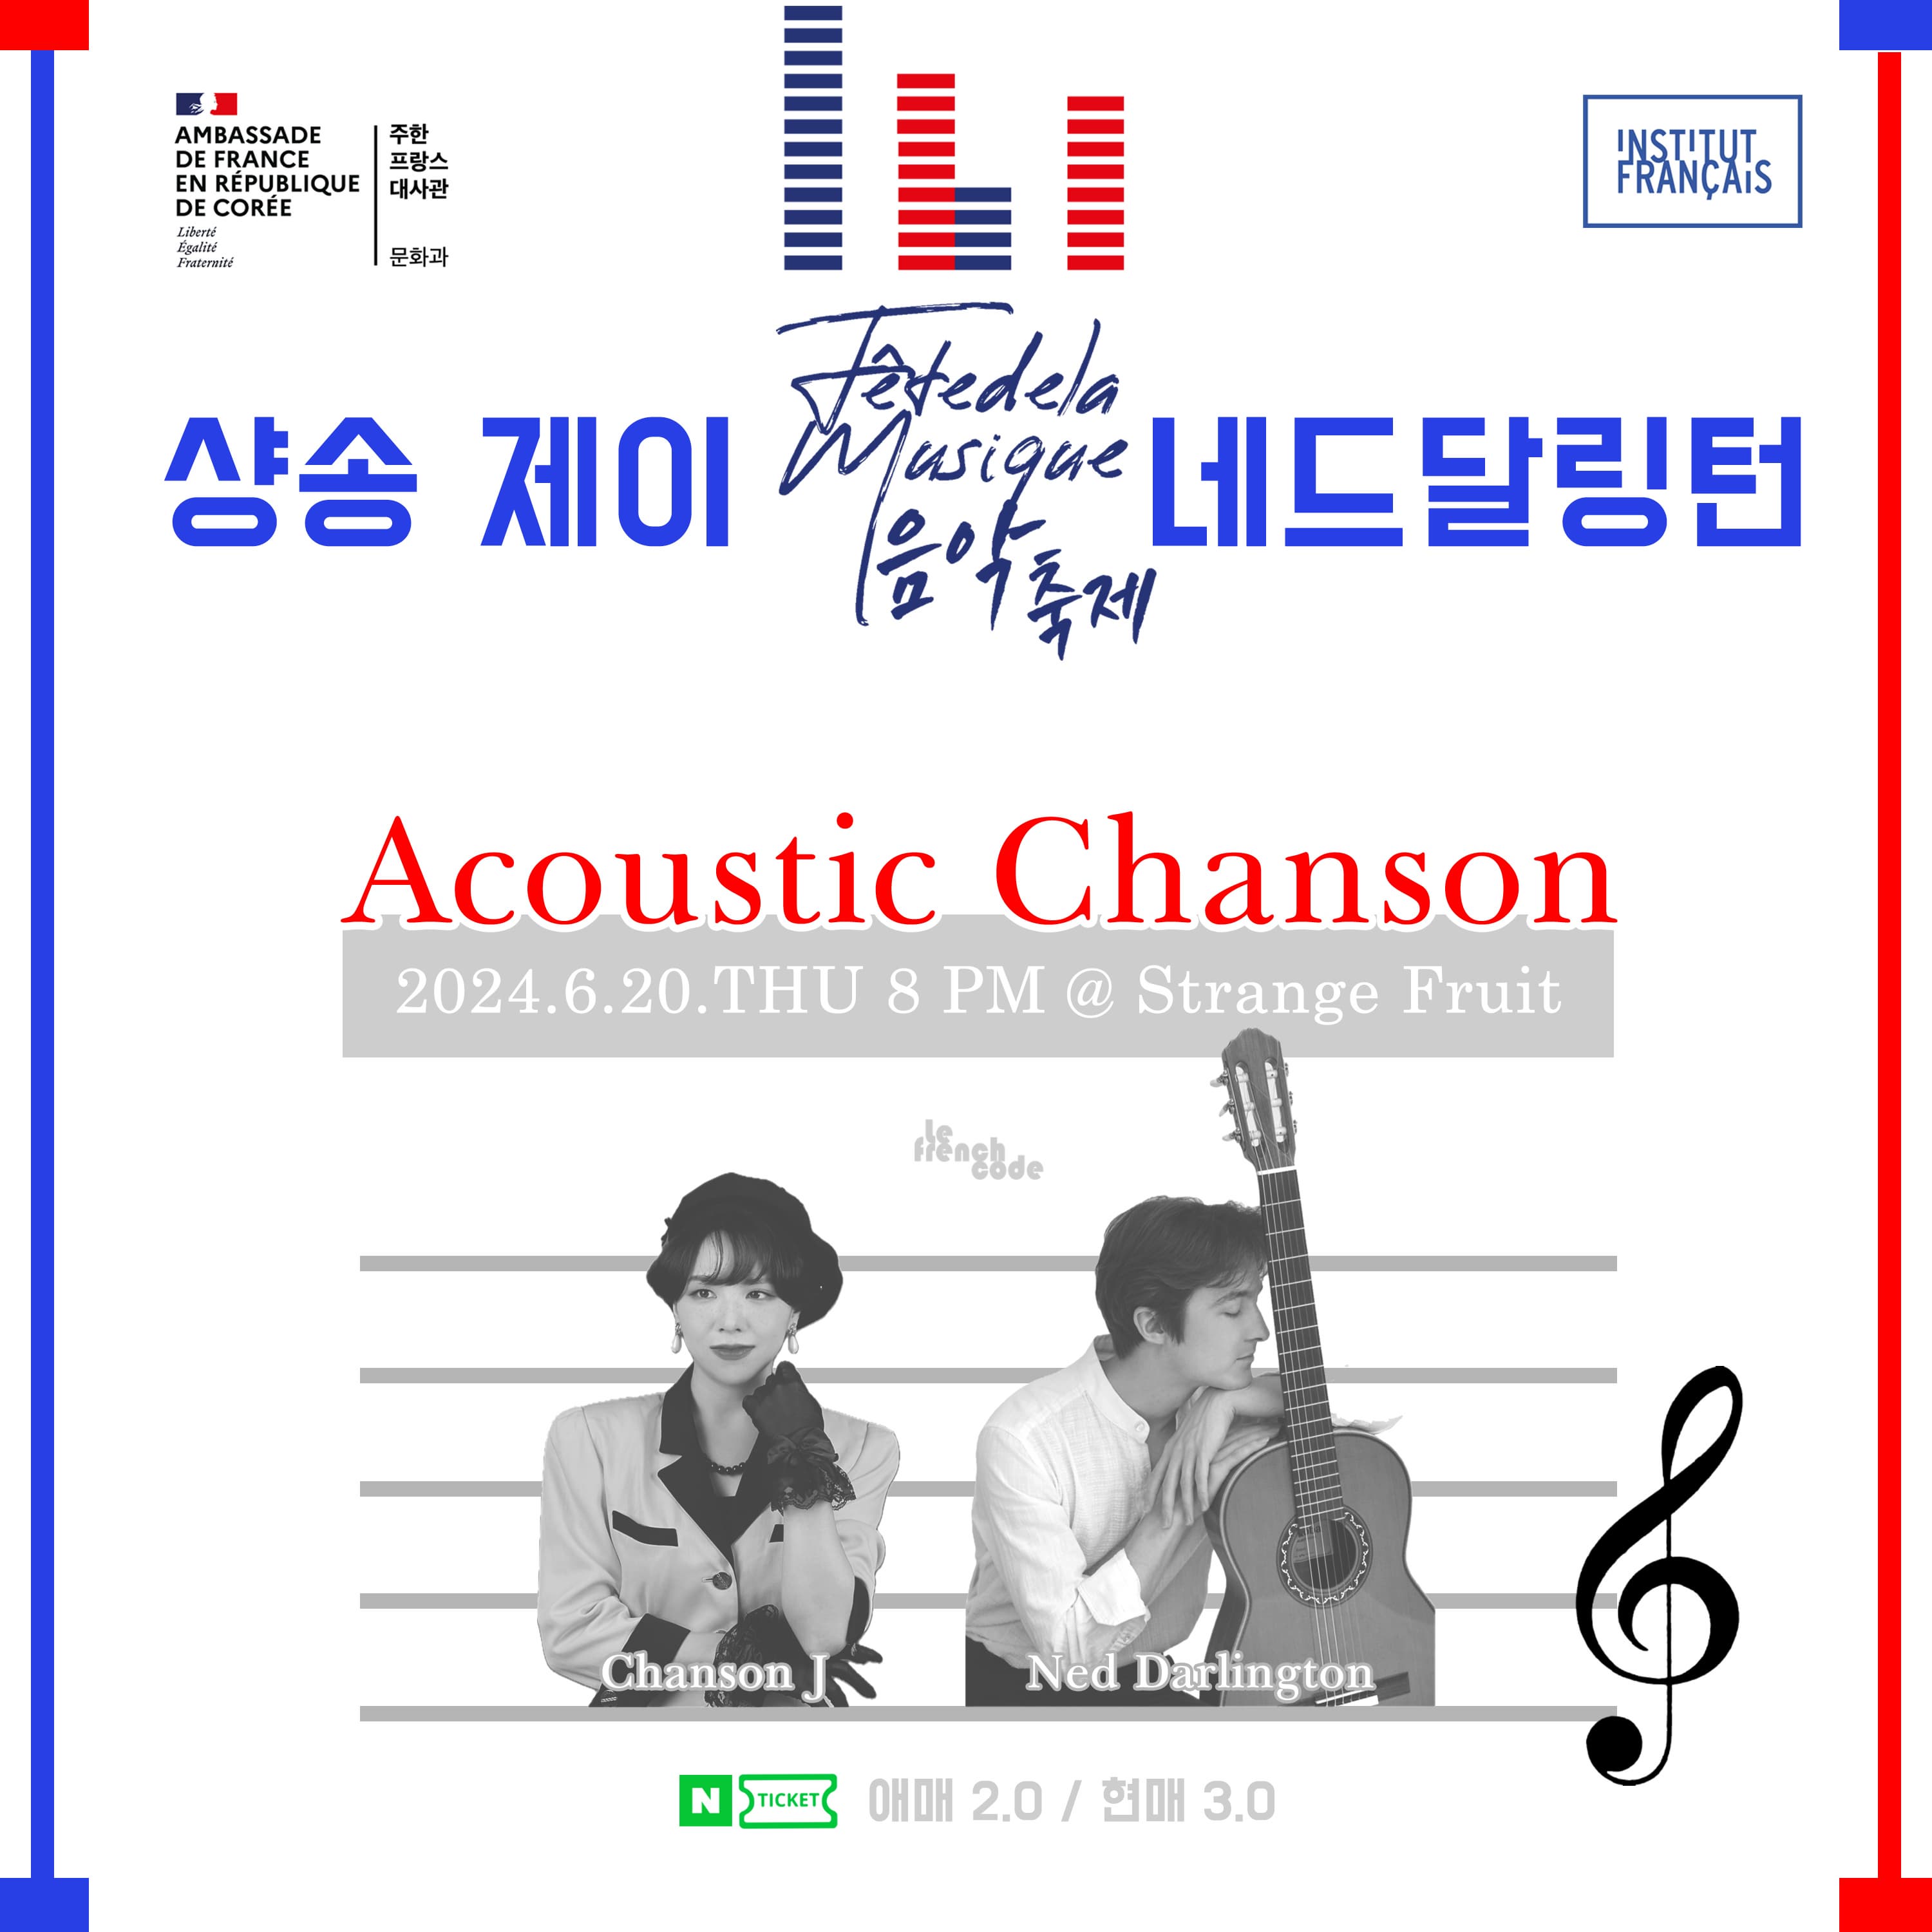 샹송제이 X 네드달링턴 : Acoustic Chanson | 2024. 6. 20 목요일 오후 8:00 ~ 오후 9:10 | 스트레인지 프룻